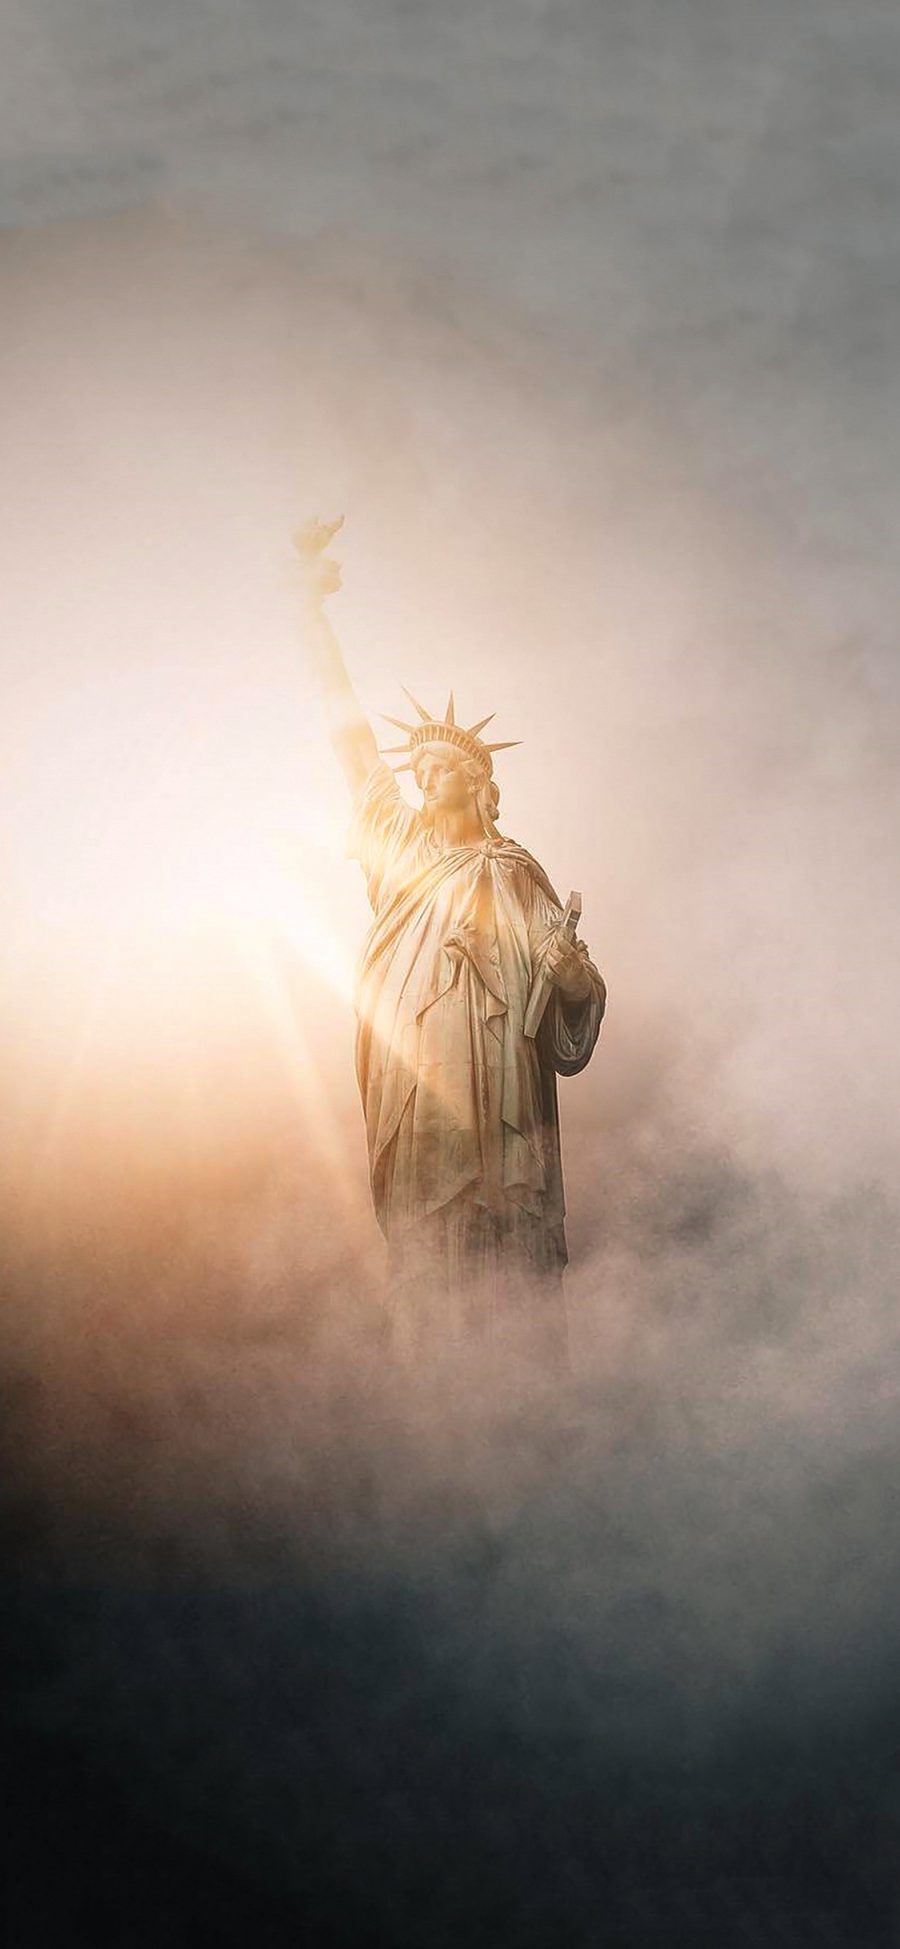 [2436×1125]自由女神 阳光 烟雾 美国 纽约 雕塑 苹果手机壁纸图片